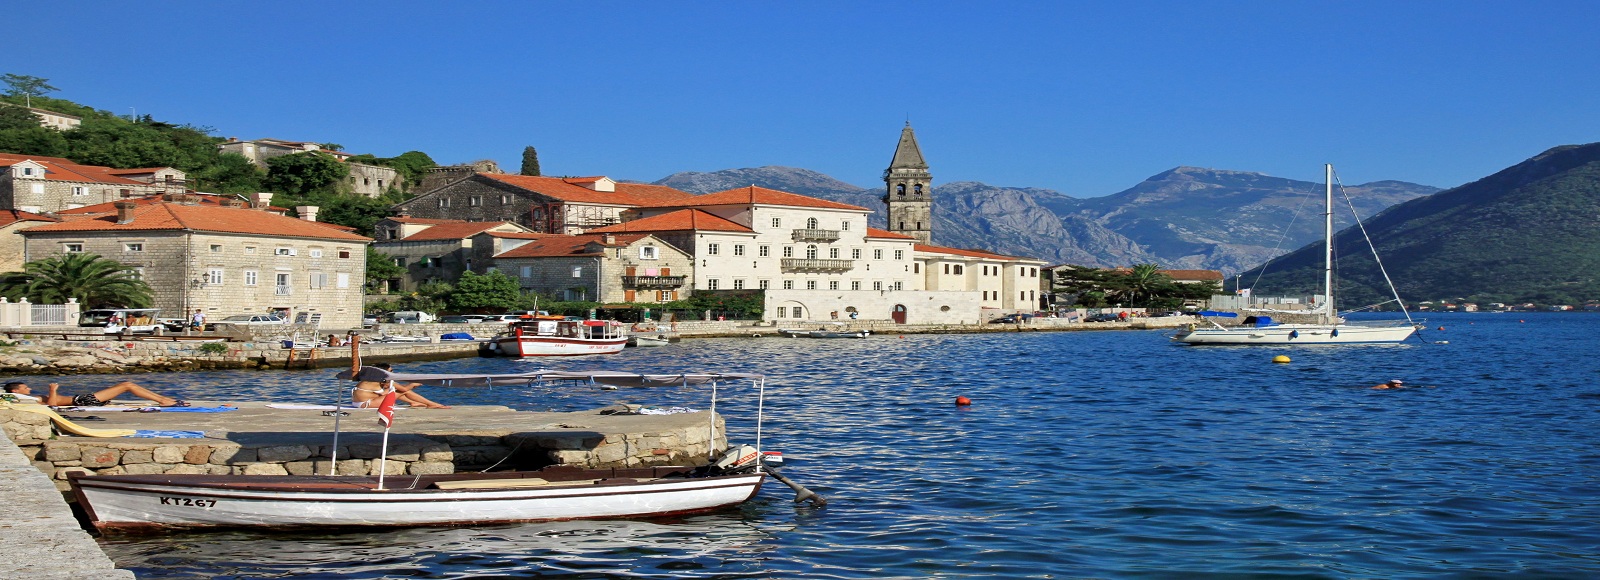 Ofertas de Traslados en Montenegro. Traslados económicos en Montenegro 